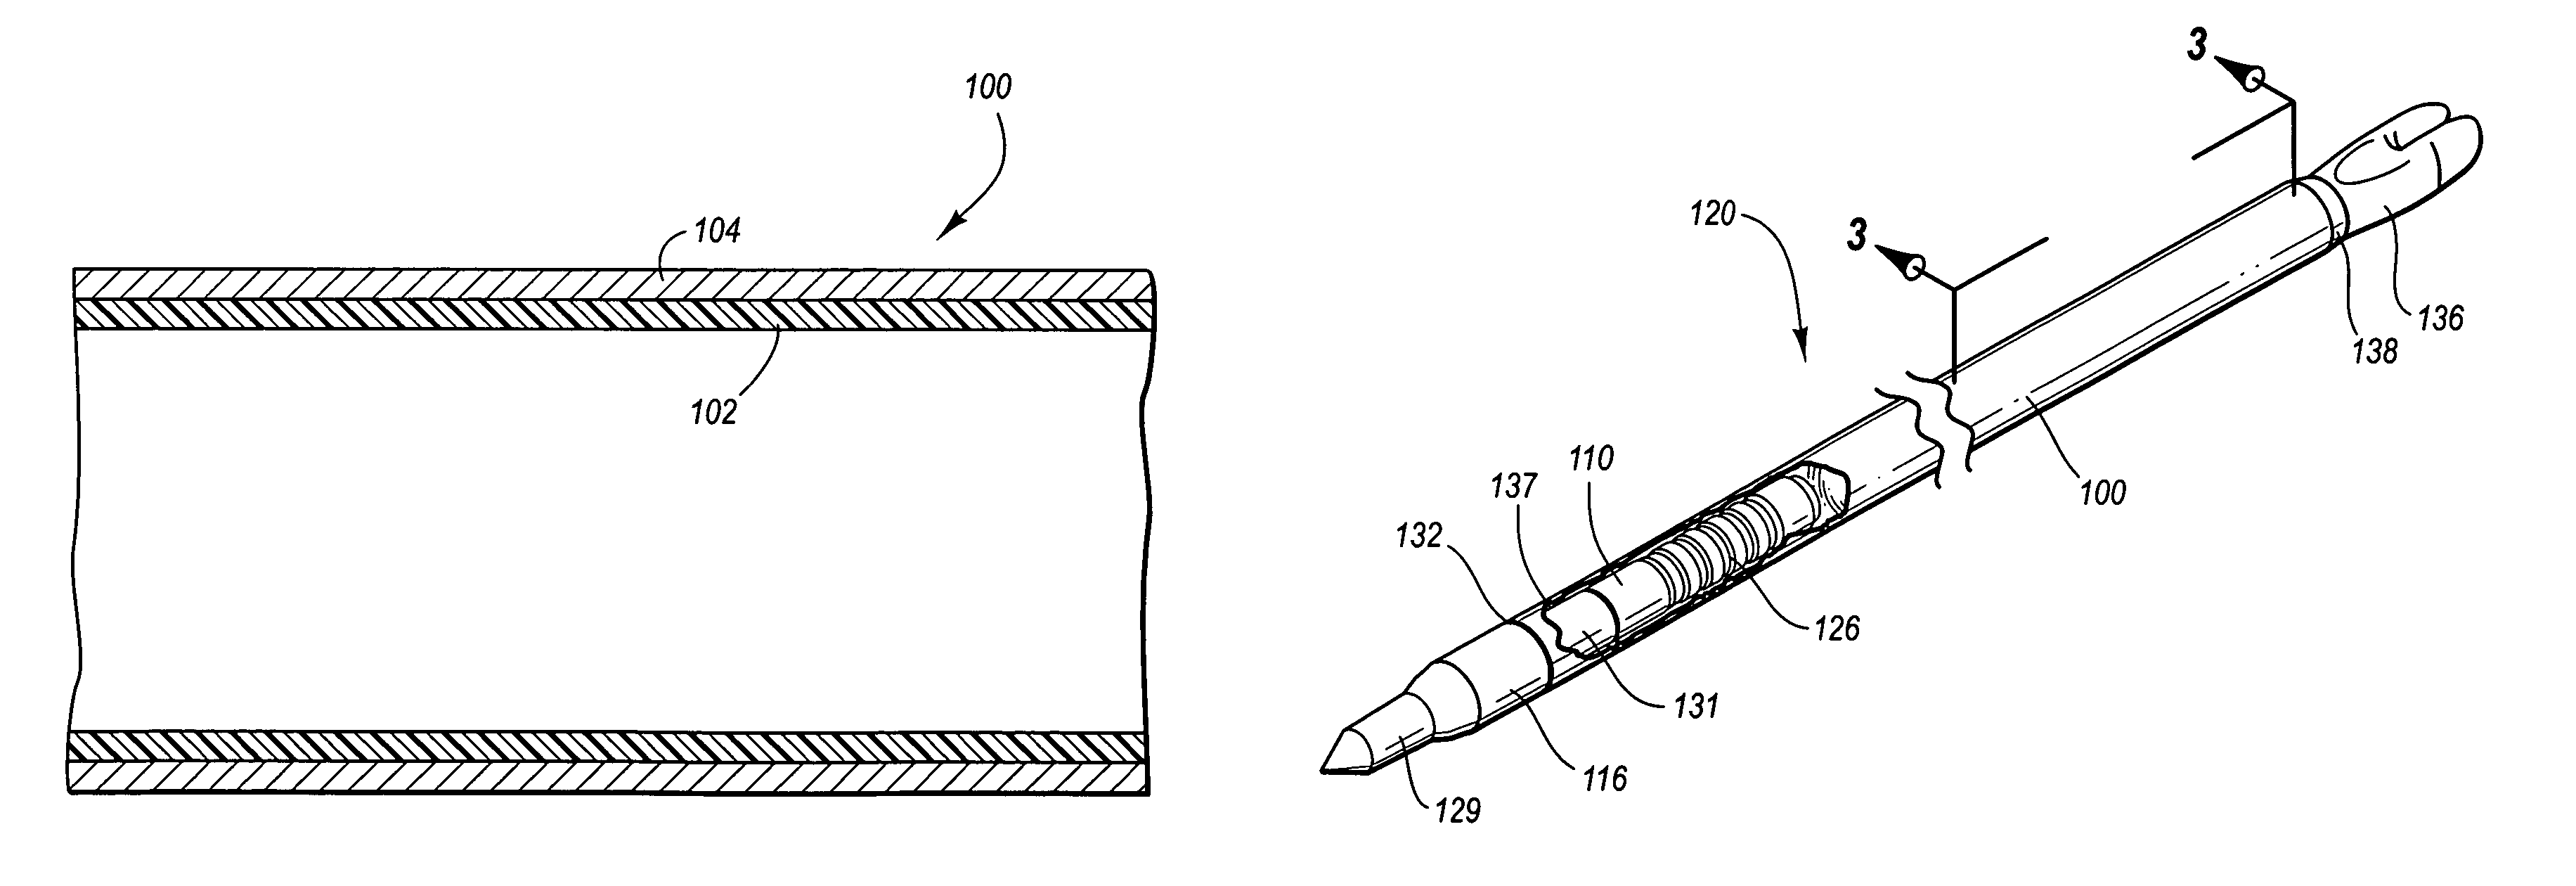 Metallic arrow shaft with fiber reinforced polymer core